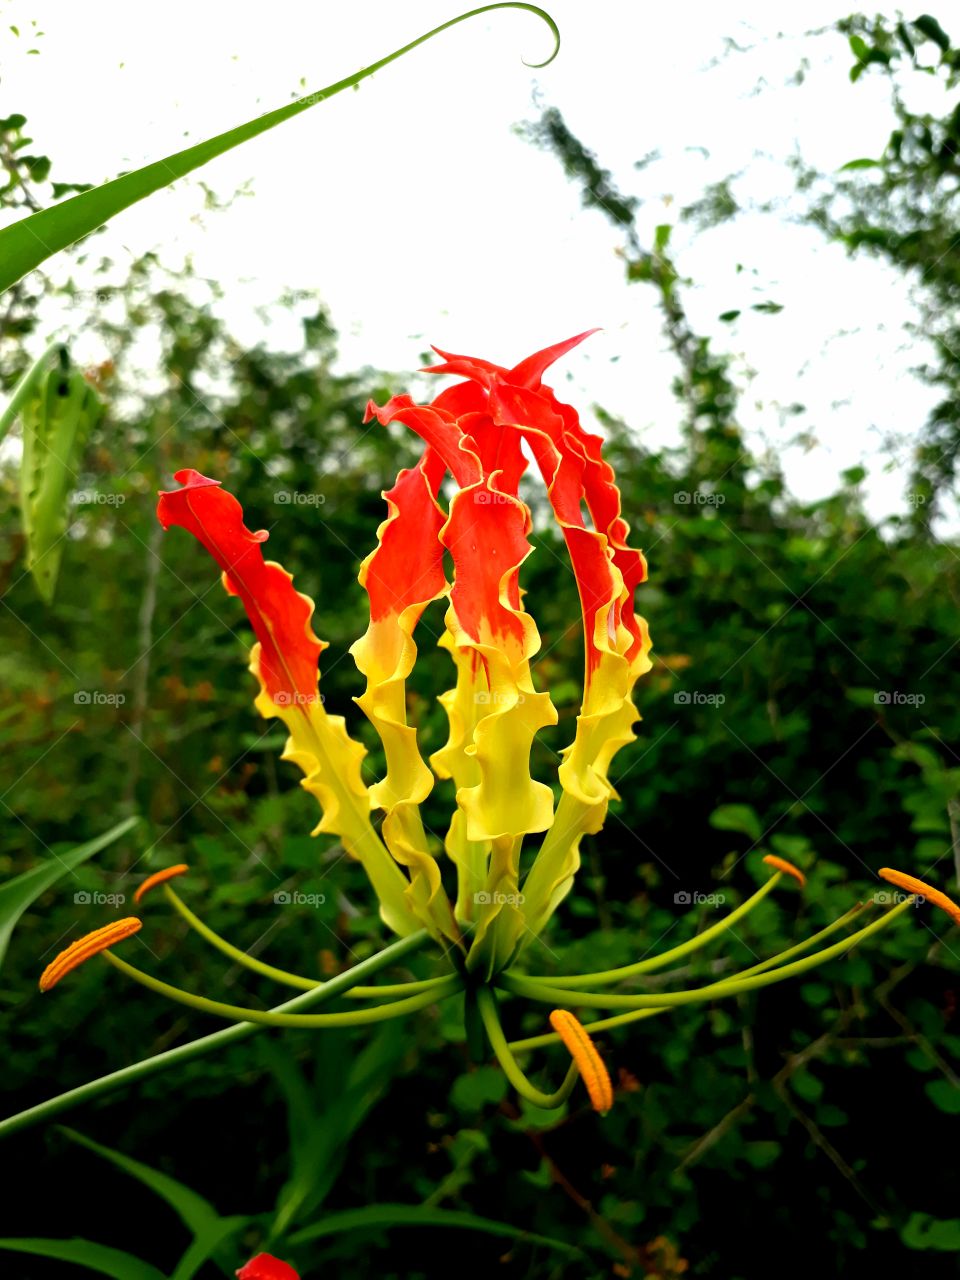 fire flower